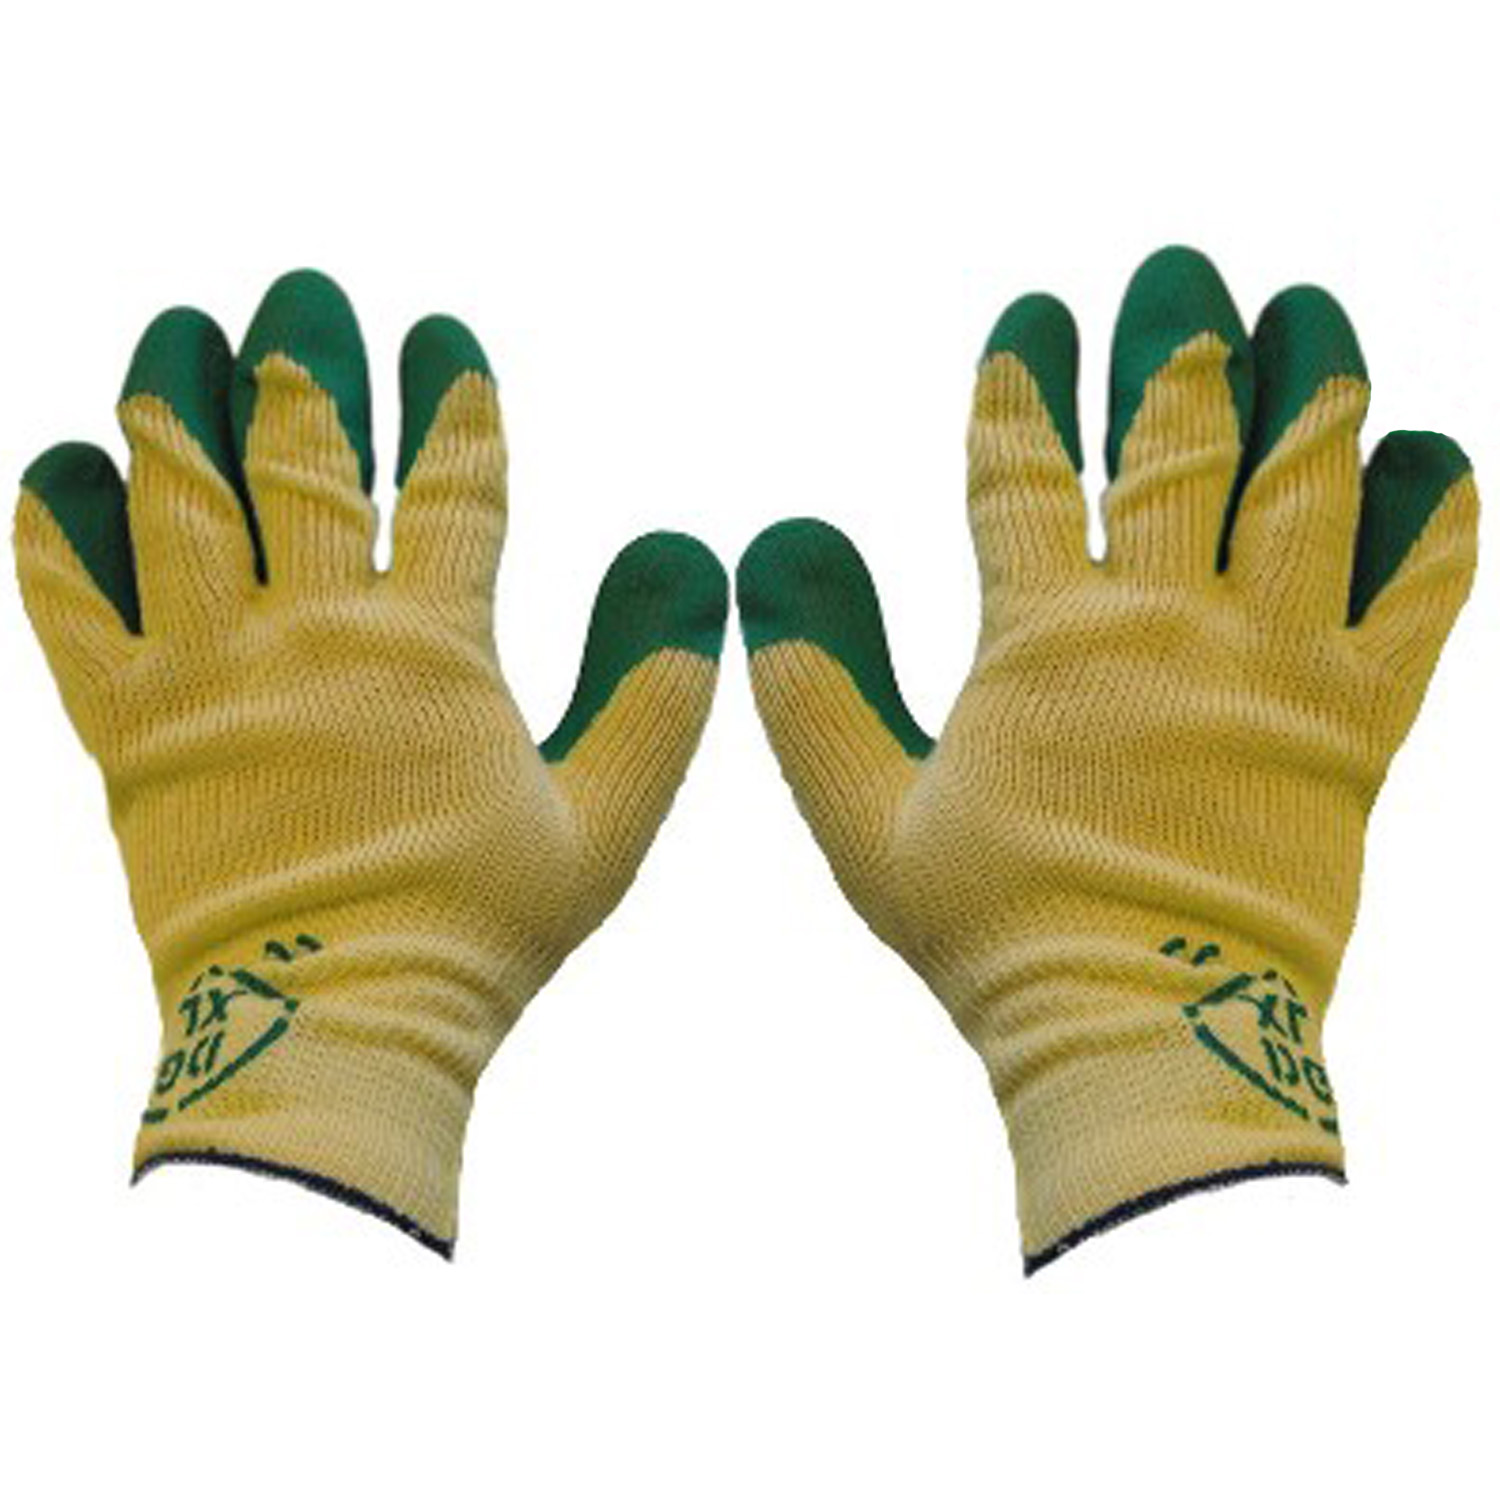 Arbeitshandschuhe - K015 Latex grün Größe 9 - Schutzhandschuhe